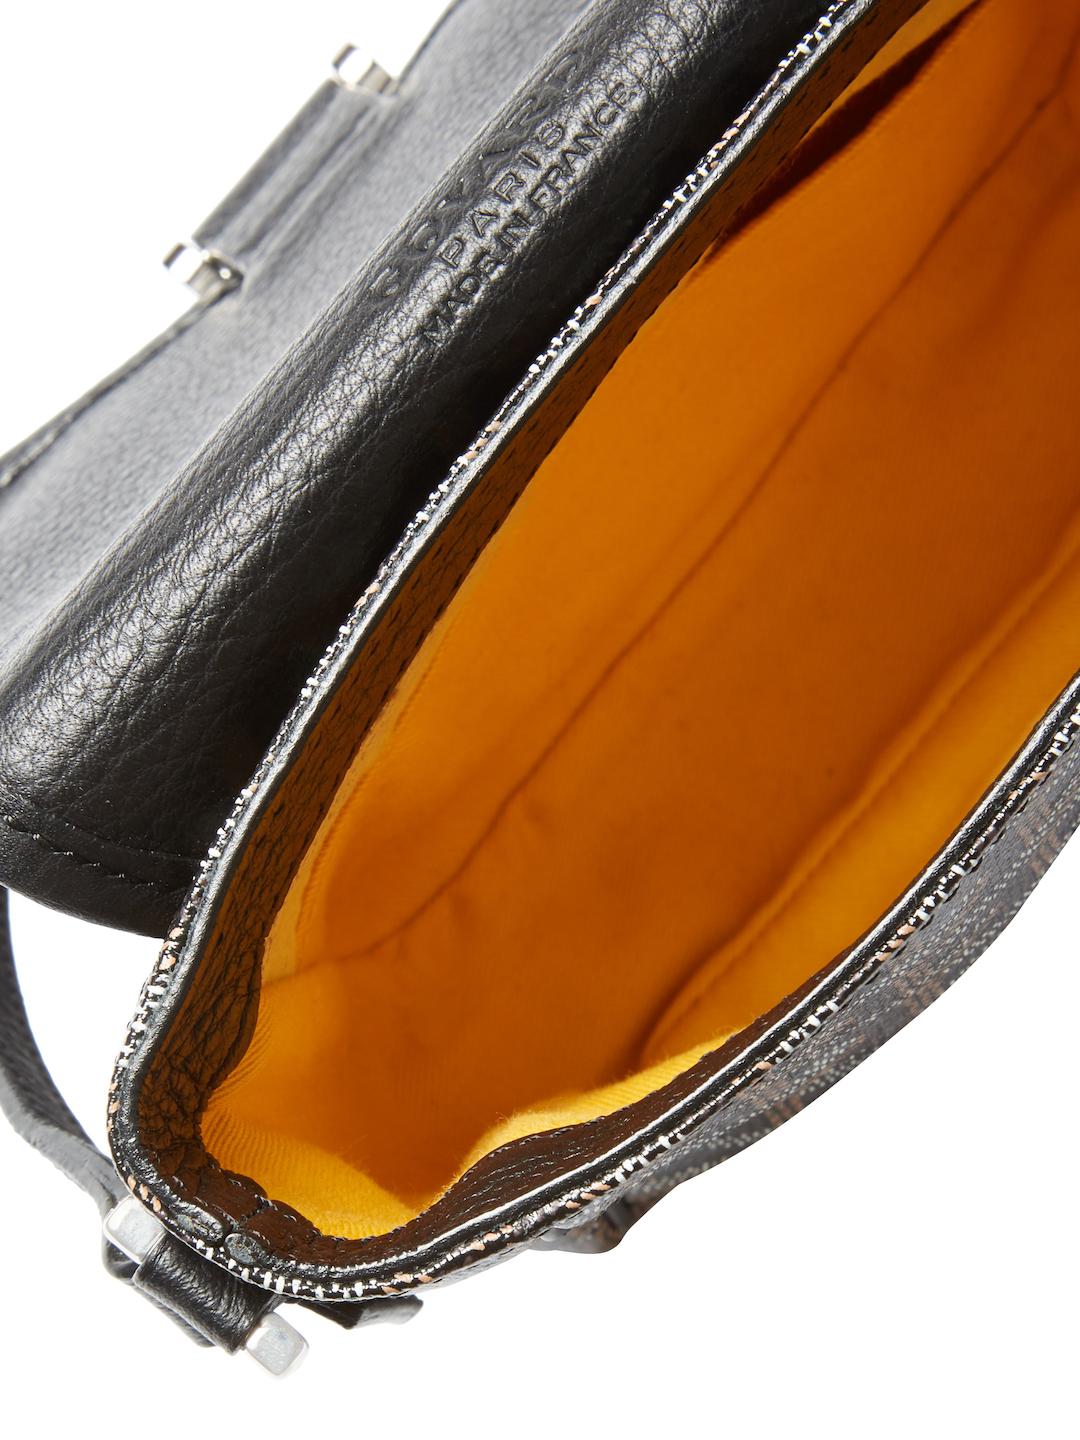 GOYARD GRAND BLEU MM PVC Leather Black Shoulder Bag Unisex Used from Japan  F/S